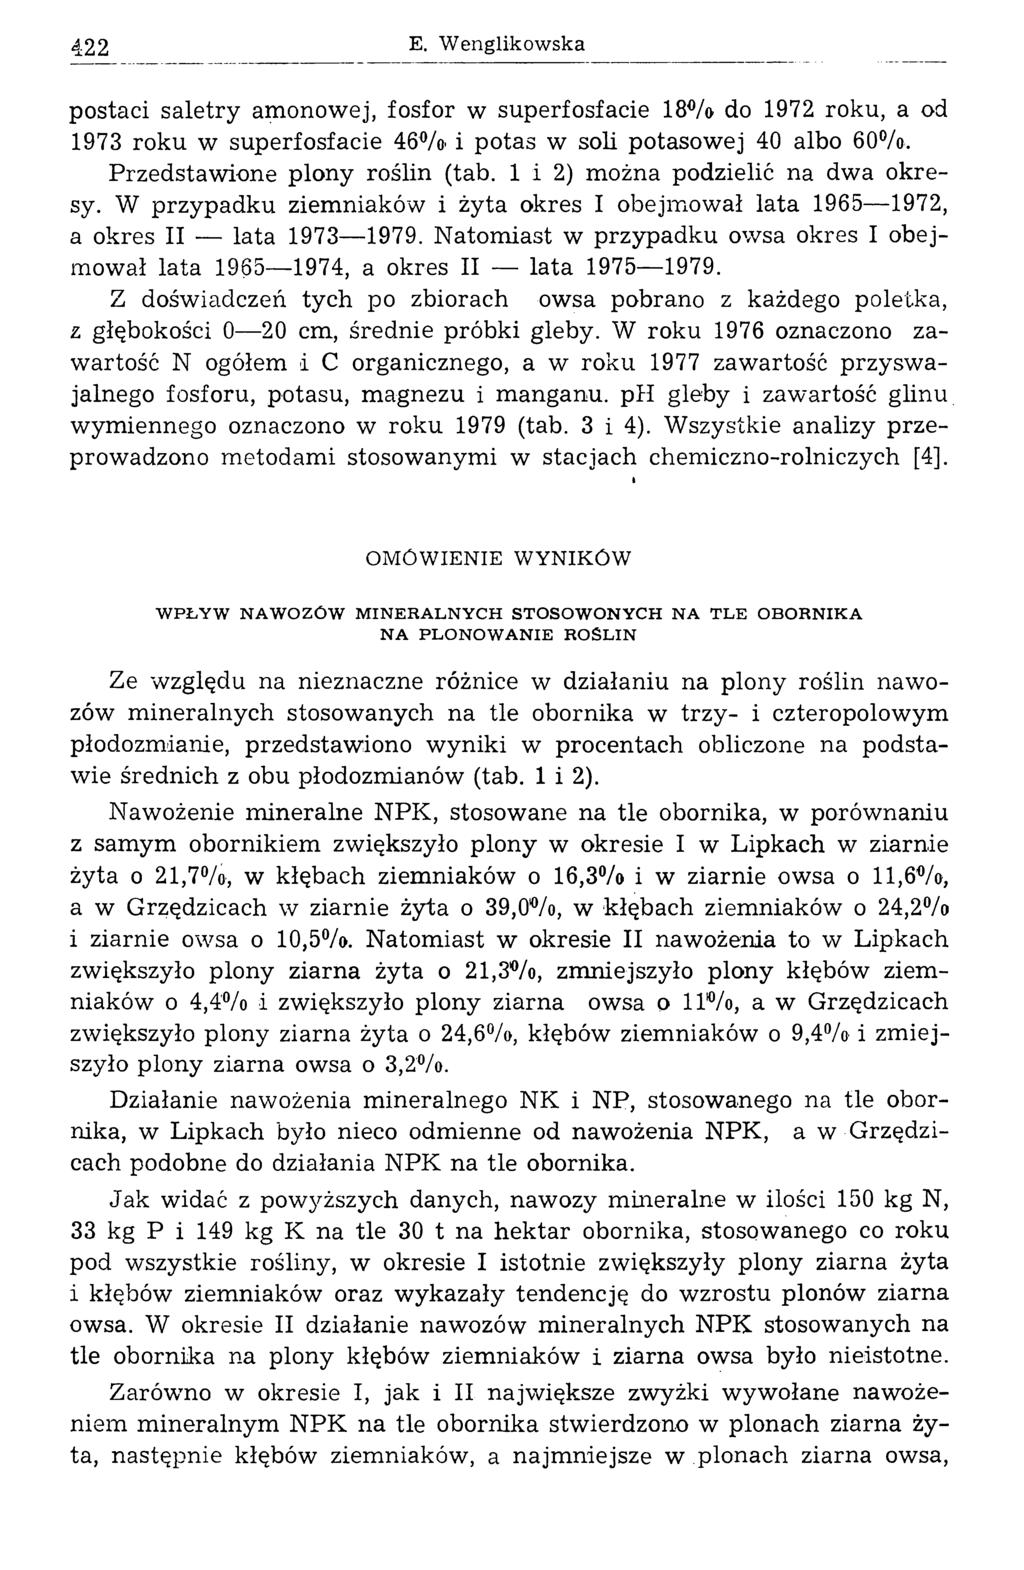 E. Wenglkowska postac saletry amonowej, fosfor w superfosface 18% do 1972 roku, a od 1973 roku w superfosface 46% potas w sol potasow ej 40 albo 60%. Przedstaw one plony rośln (tab.